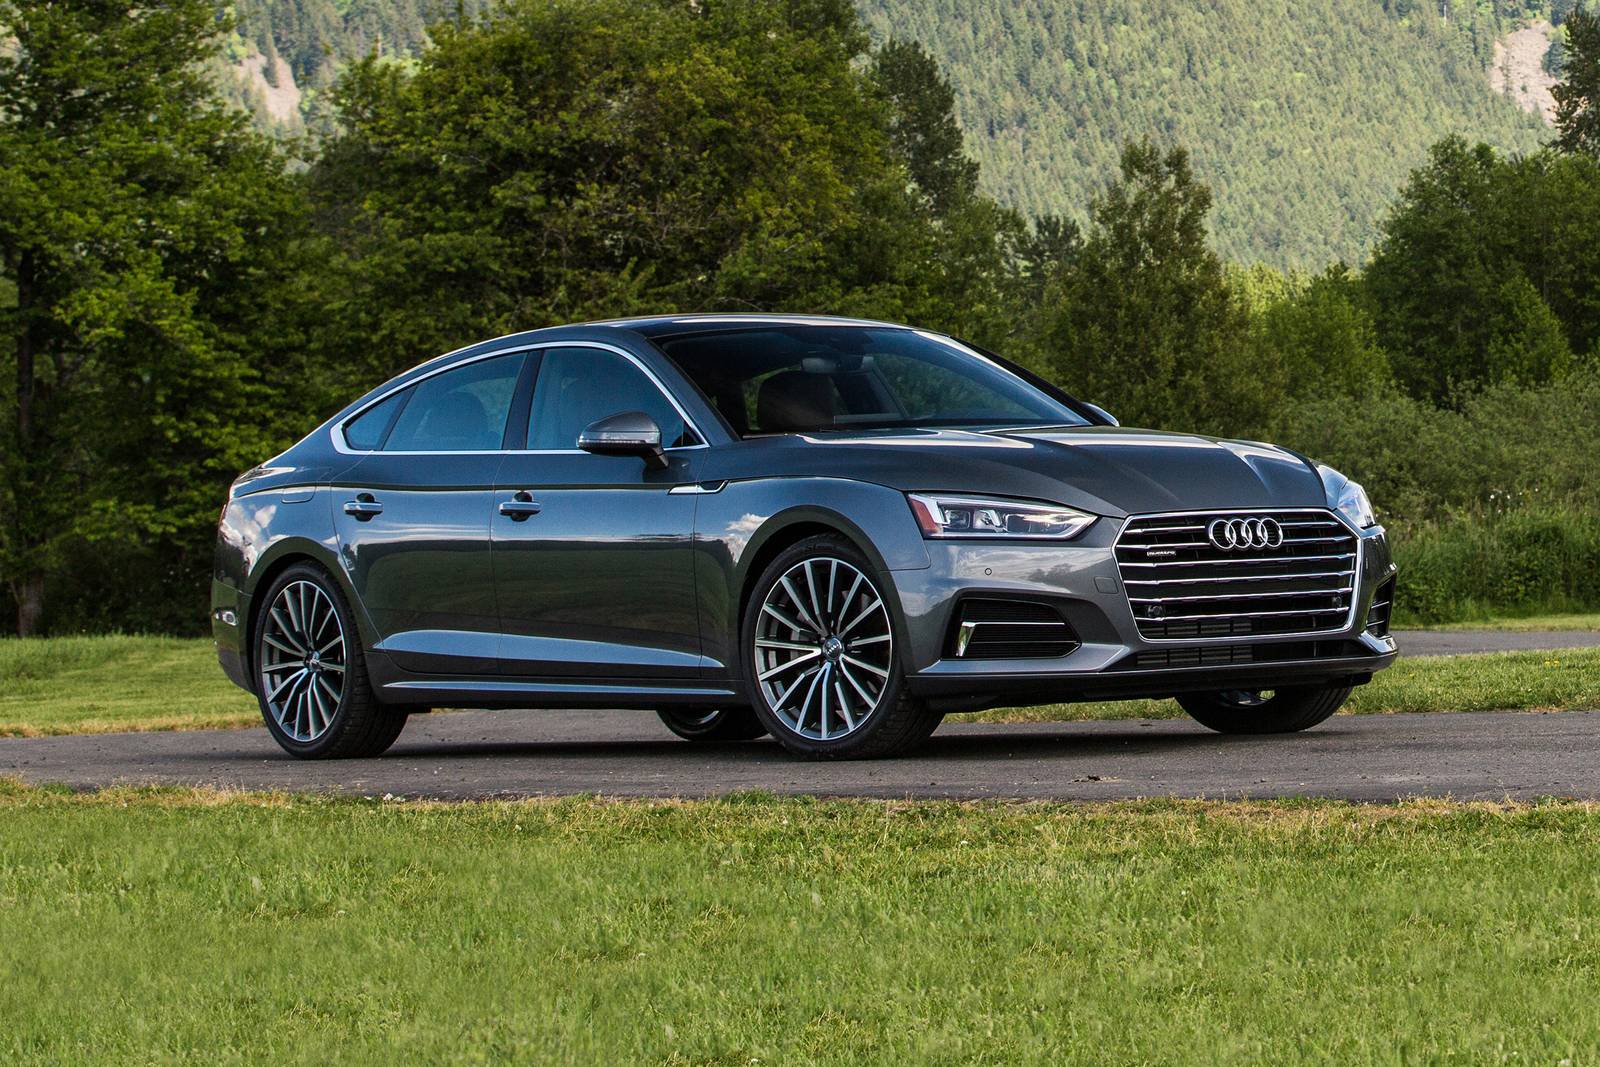 2019 Audi A5 Review & Ratings | Edmunds